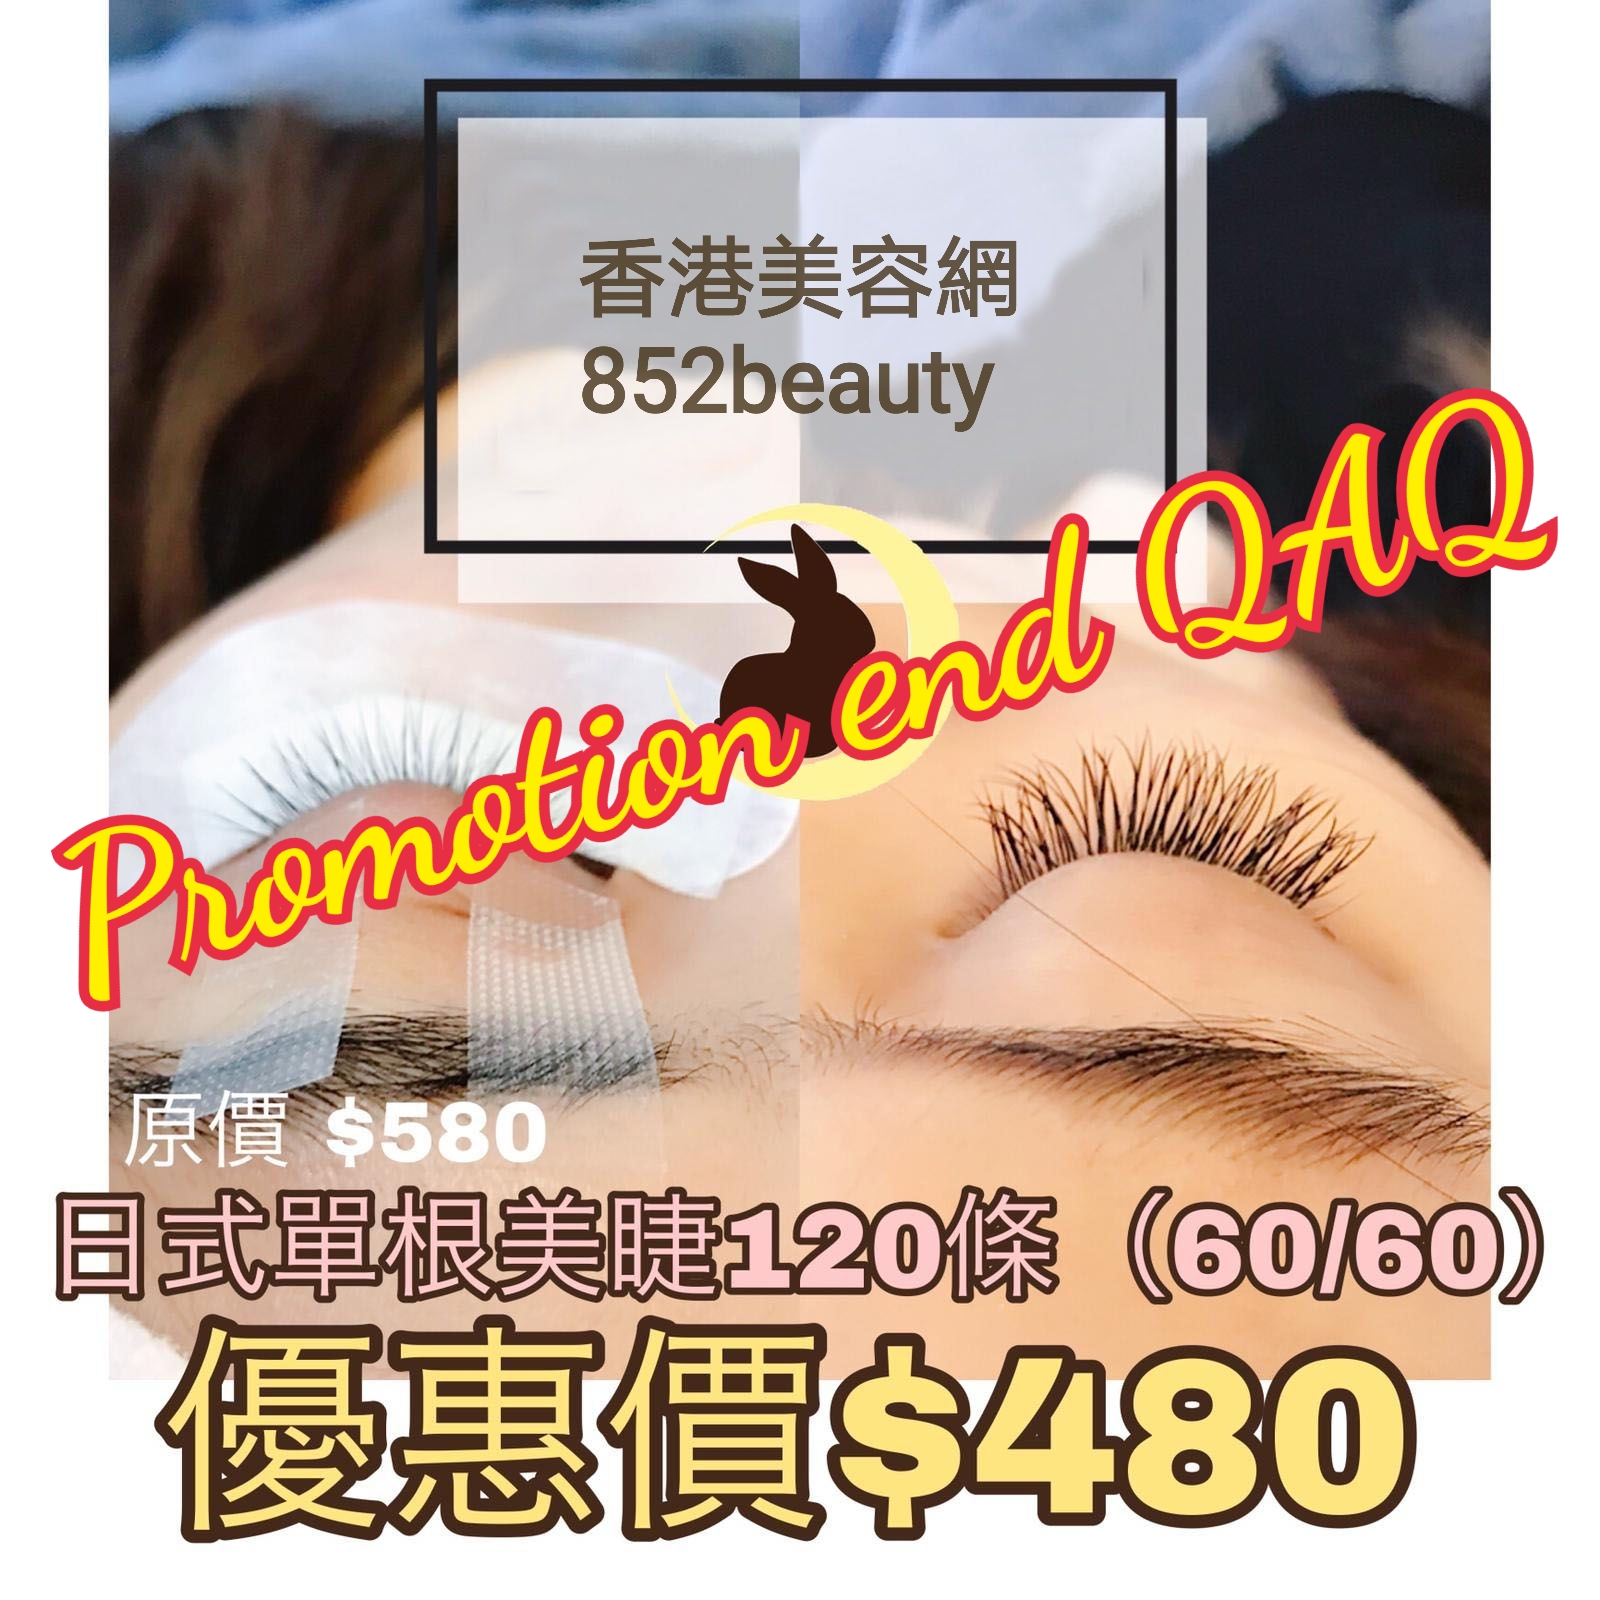 香港美容網 Hong Kong Beauty Salon 最新美容優惠: 美睫優惠 - 銅鑼灣區] 日式單根植睫毛 超優惠 $480 (已結束)